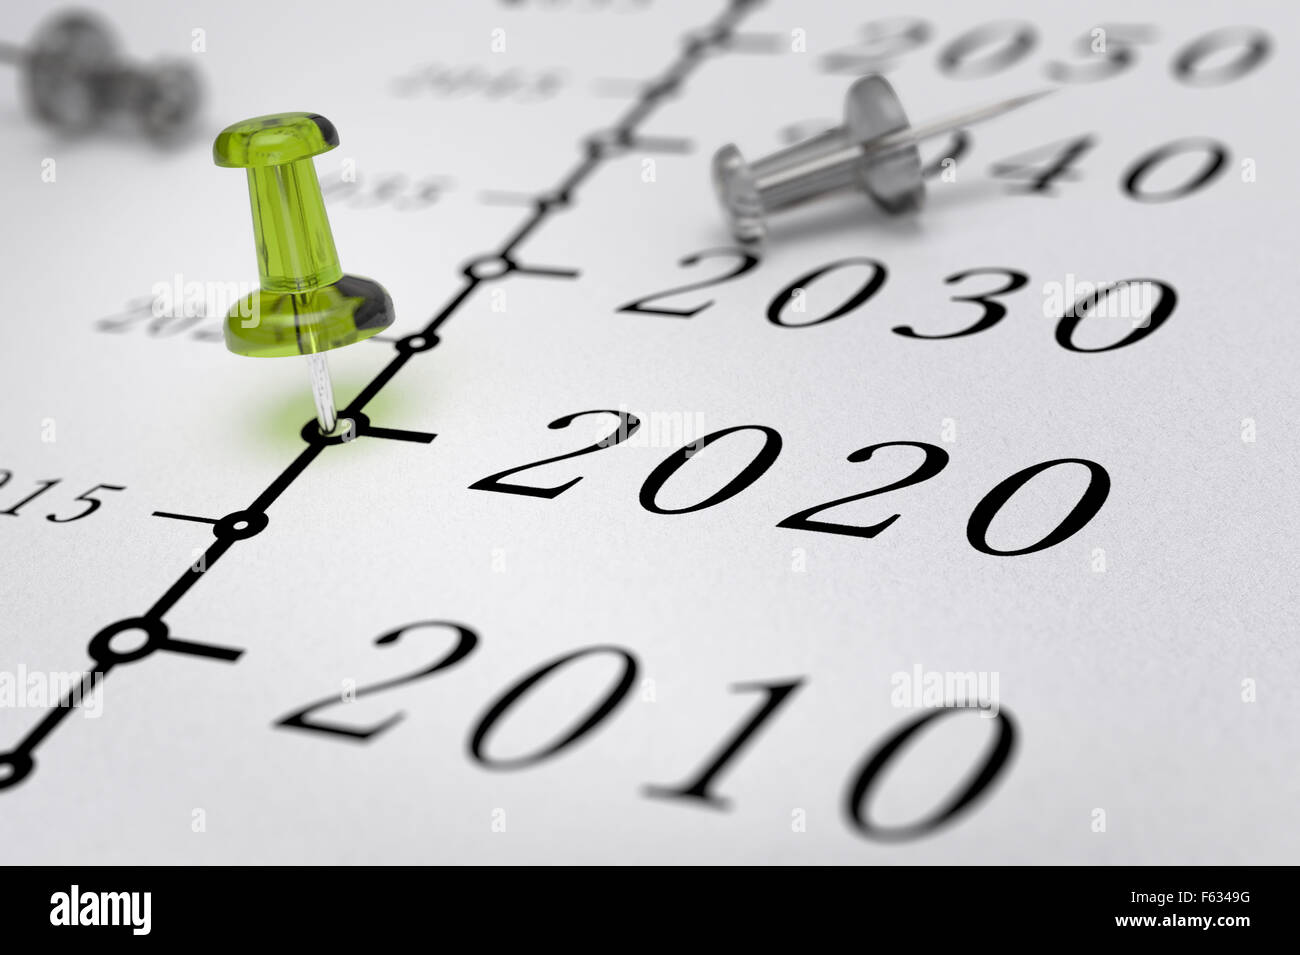 Chronologie du 21e siècle sur papier blanc avec fond punaise verte vers l'an 2020, effet de flou, conceptual image. Banque D'Images